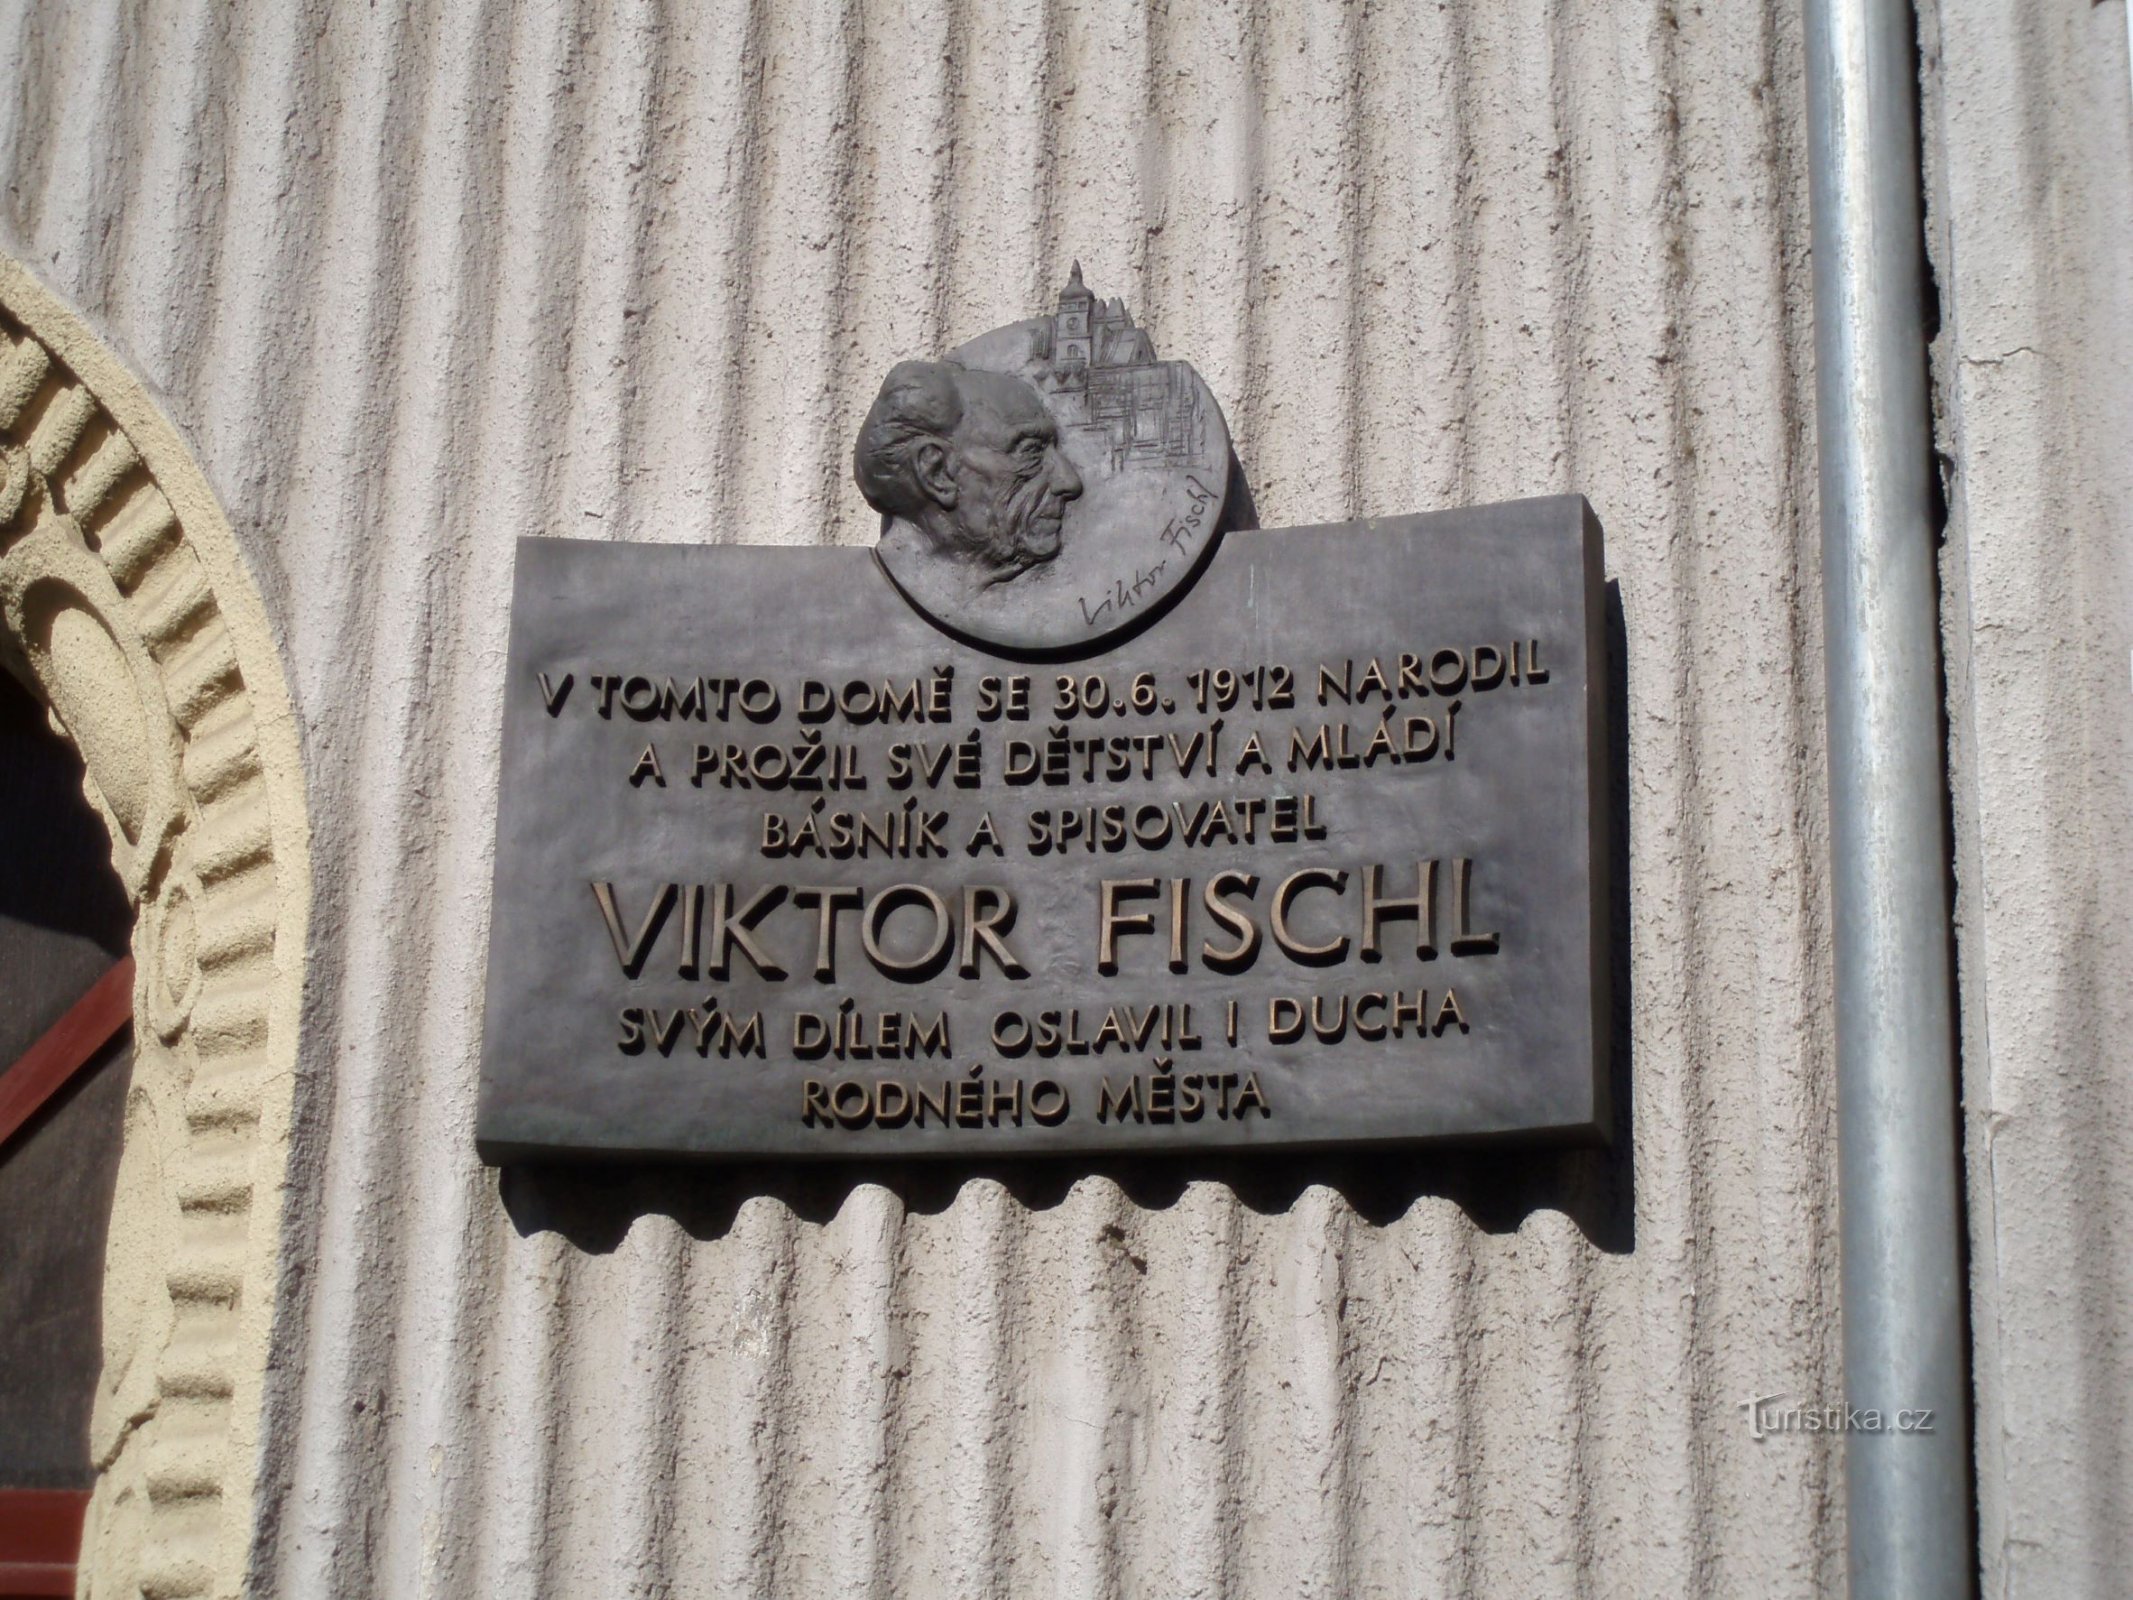 Tablica pamiątkowa w miejscu urodzenia Viktora Fischla (Hradec Králové, 20.4.2011 kwietnia XNUMX)